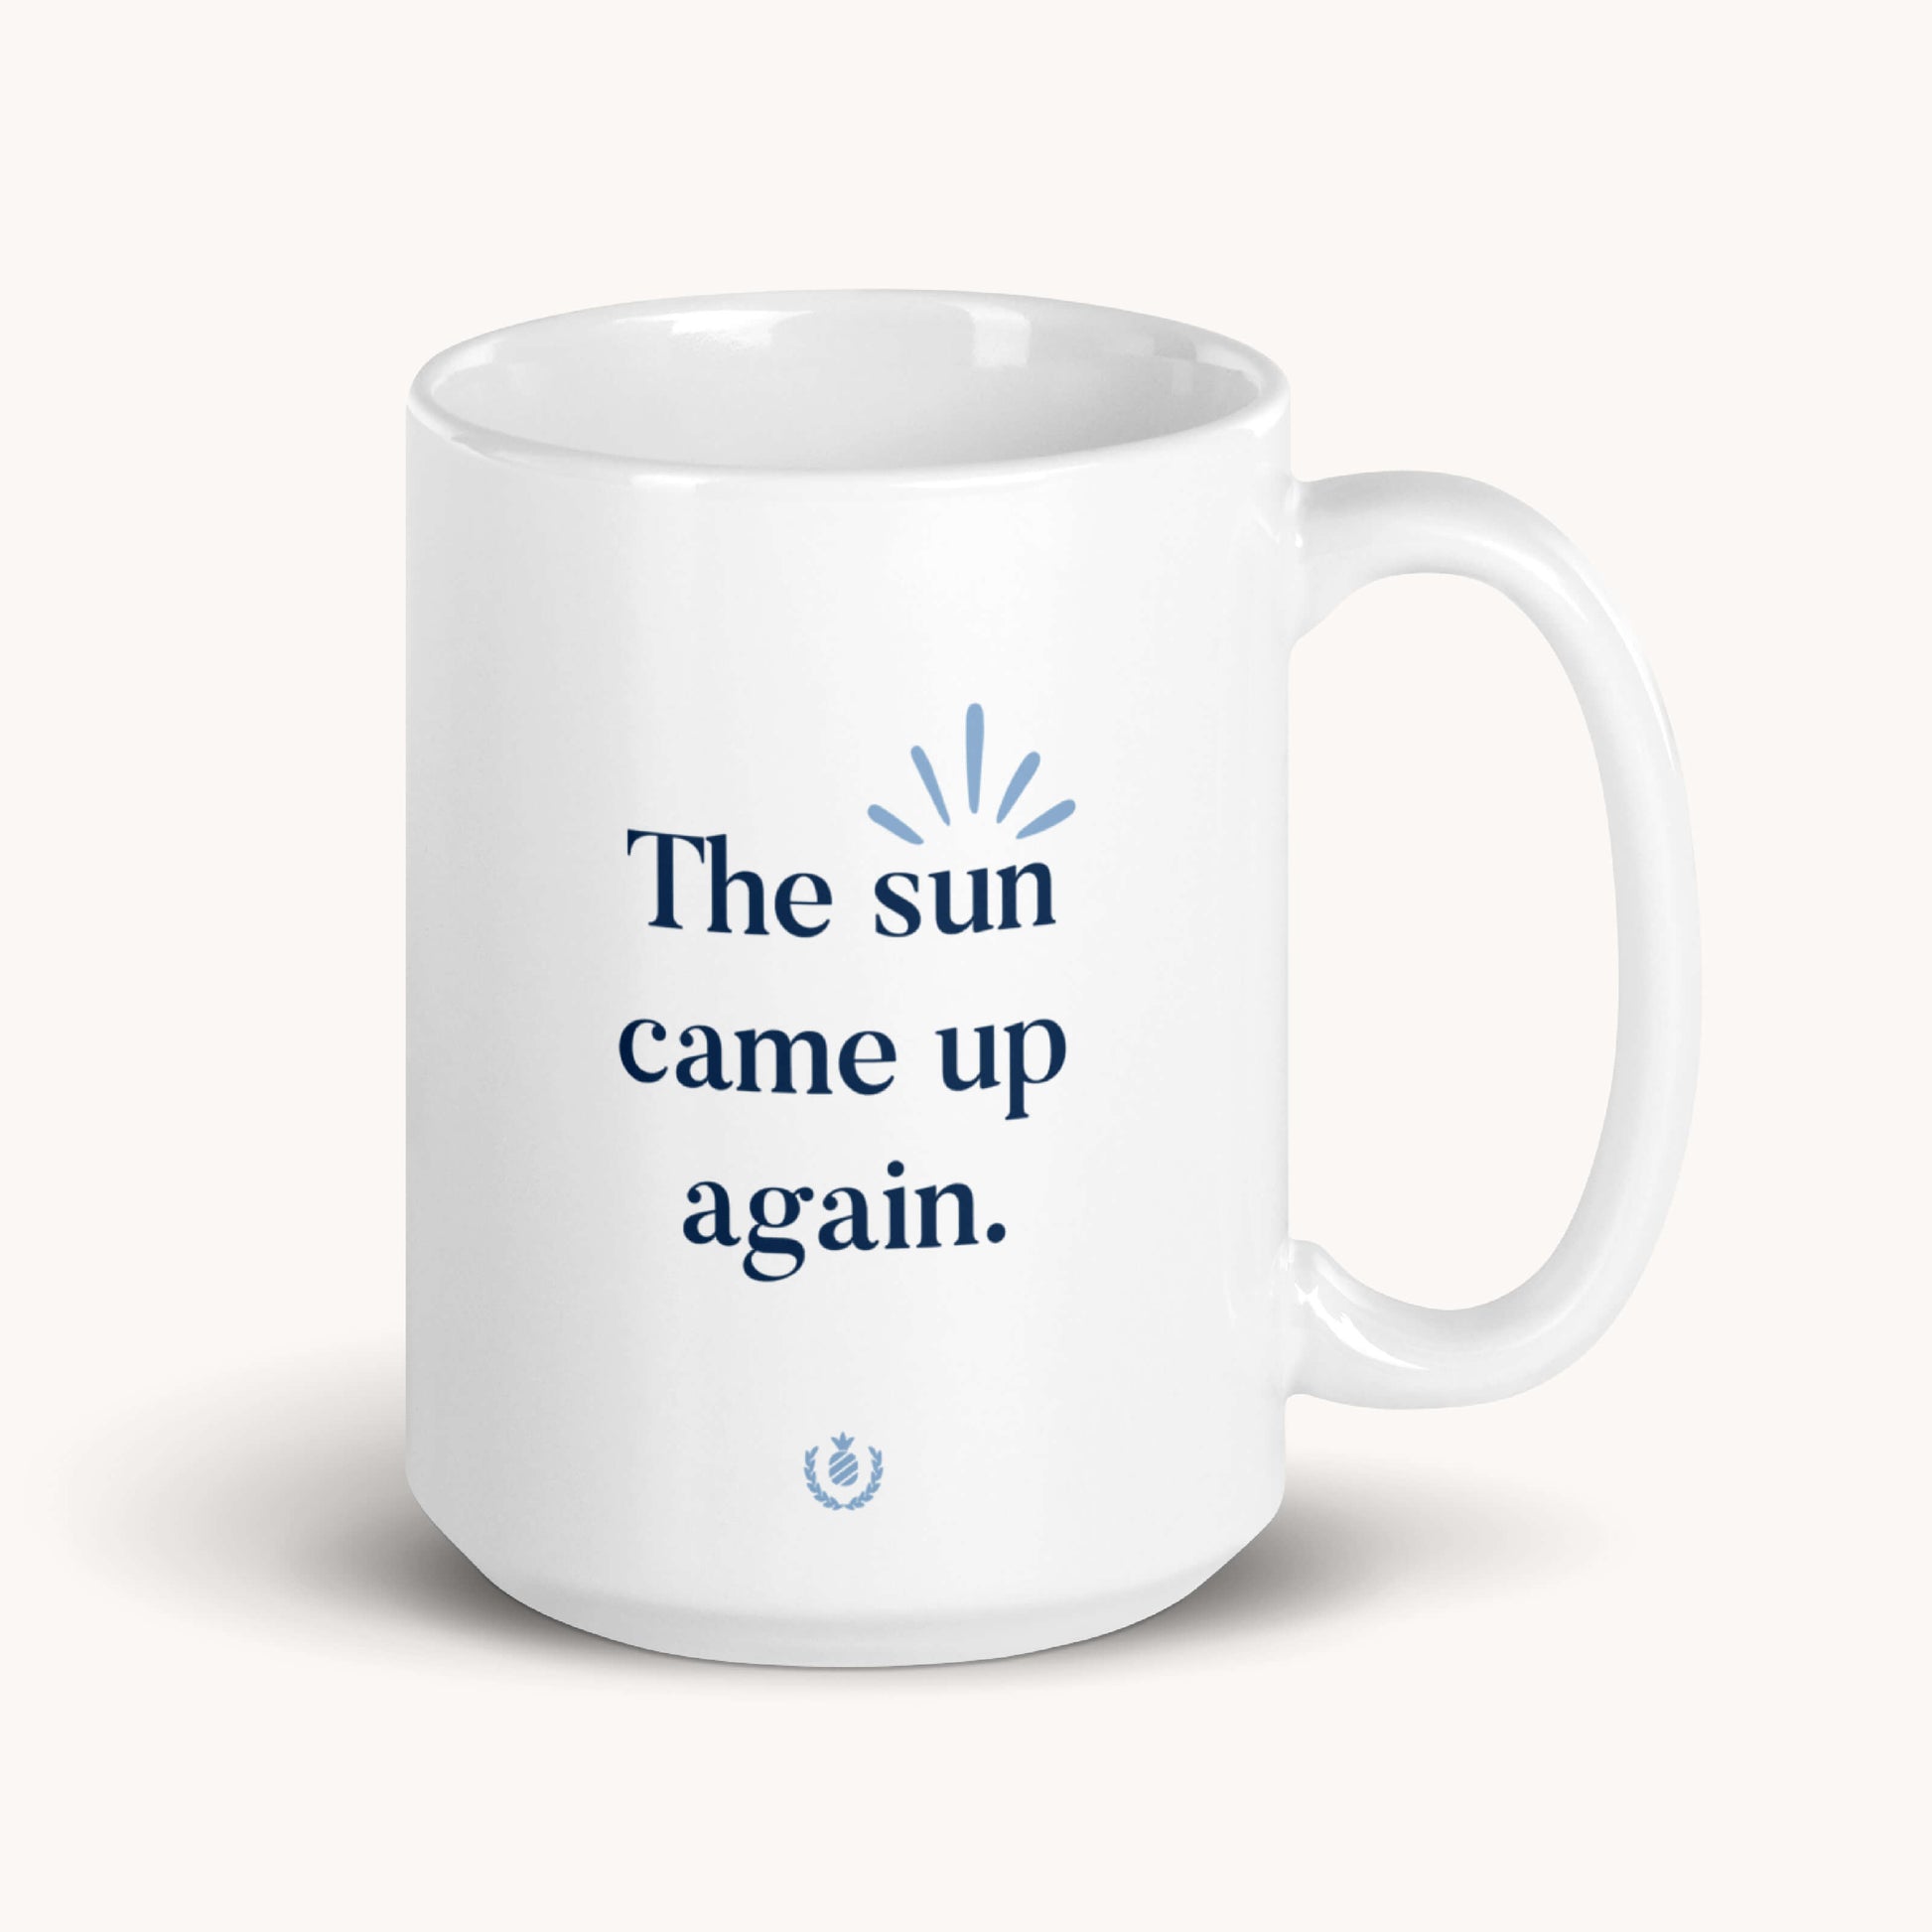 the sun came up again mug design